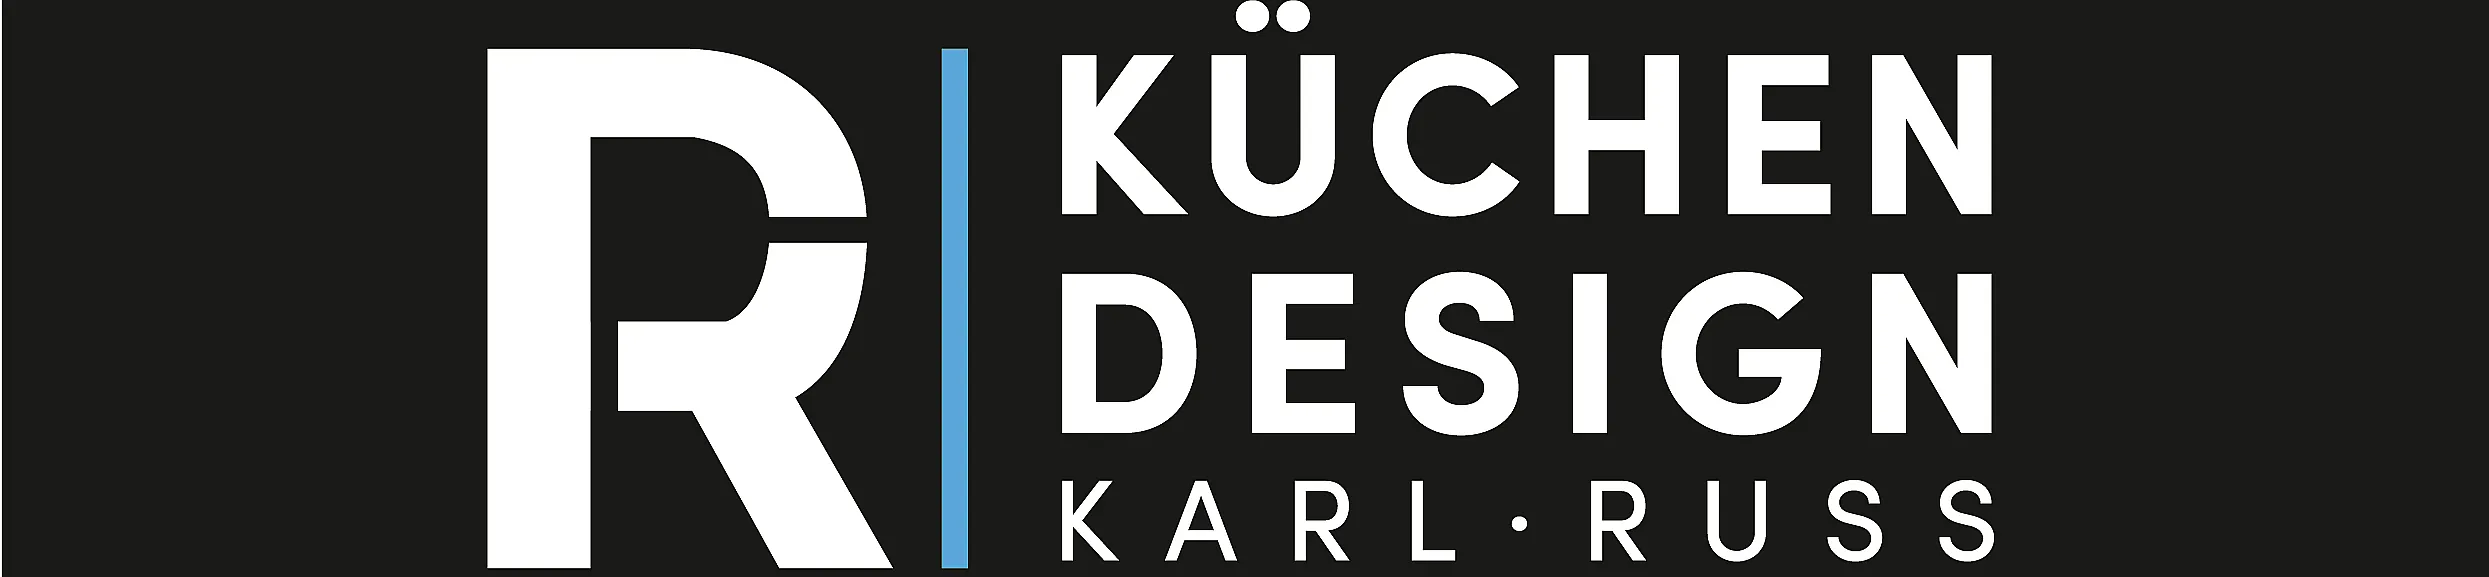 kuechen-design-karl-russ-top-banner